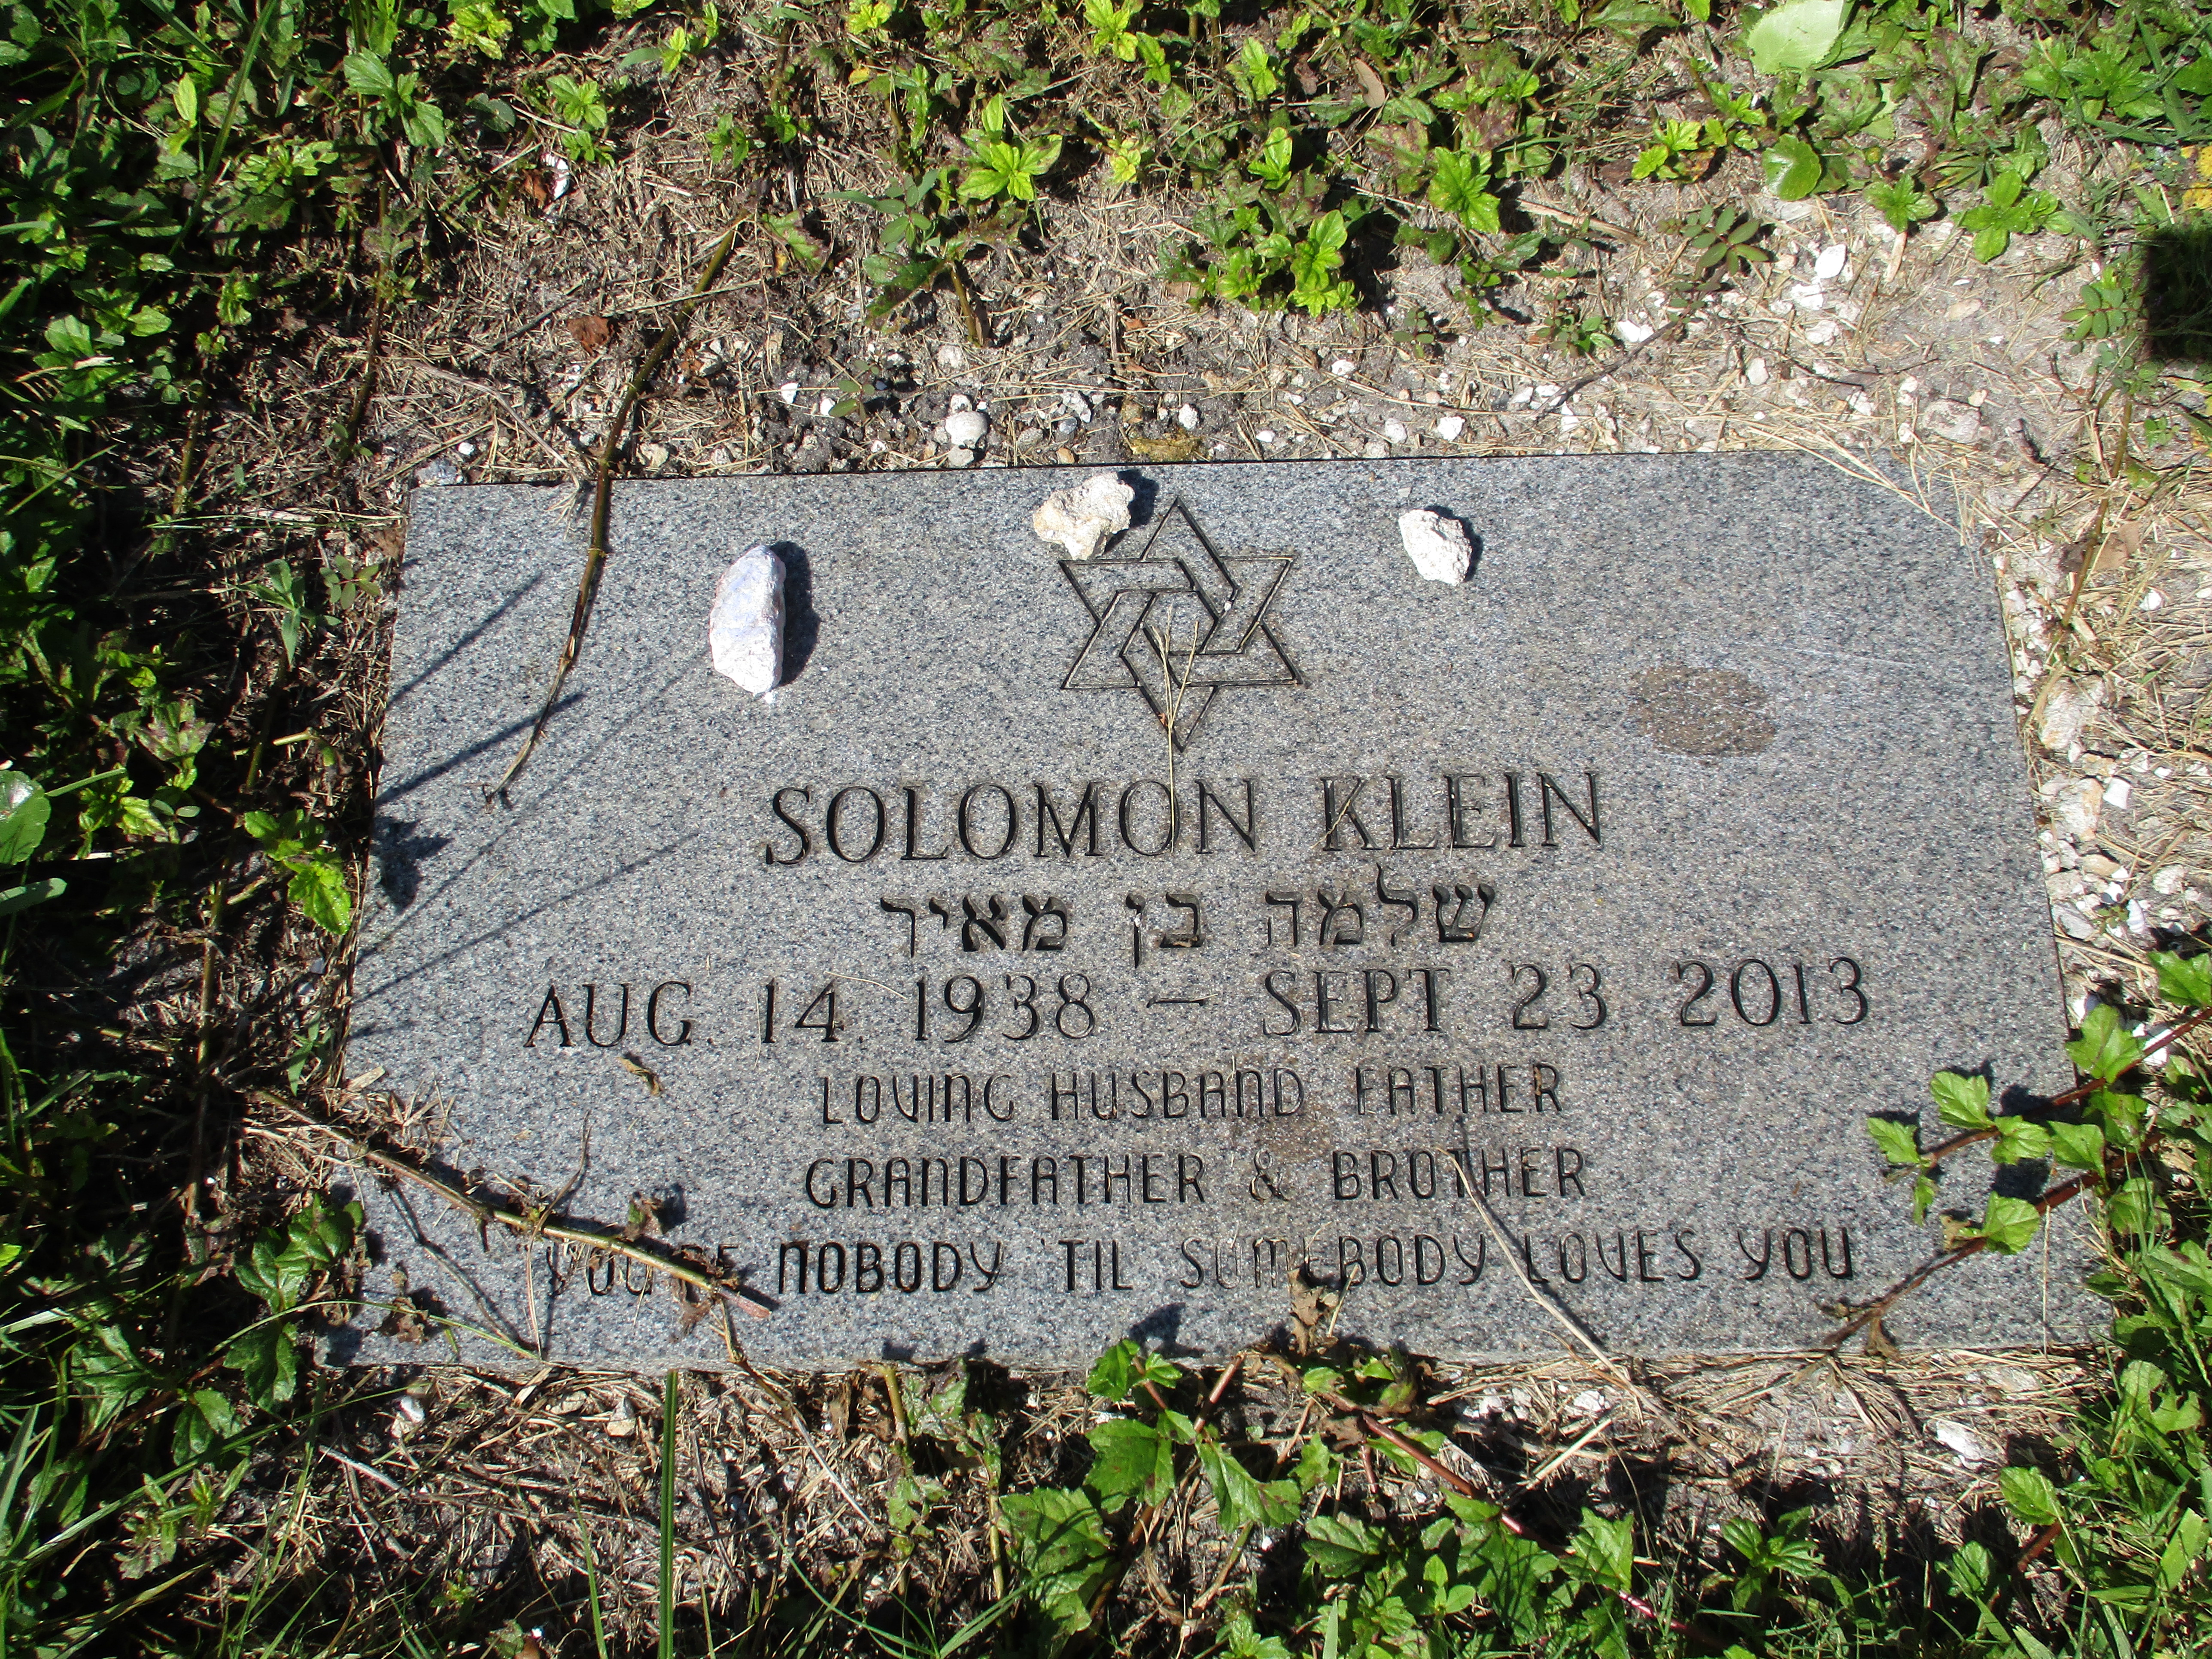 Solomon Klein